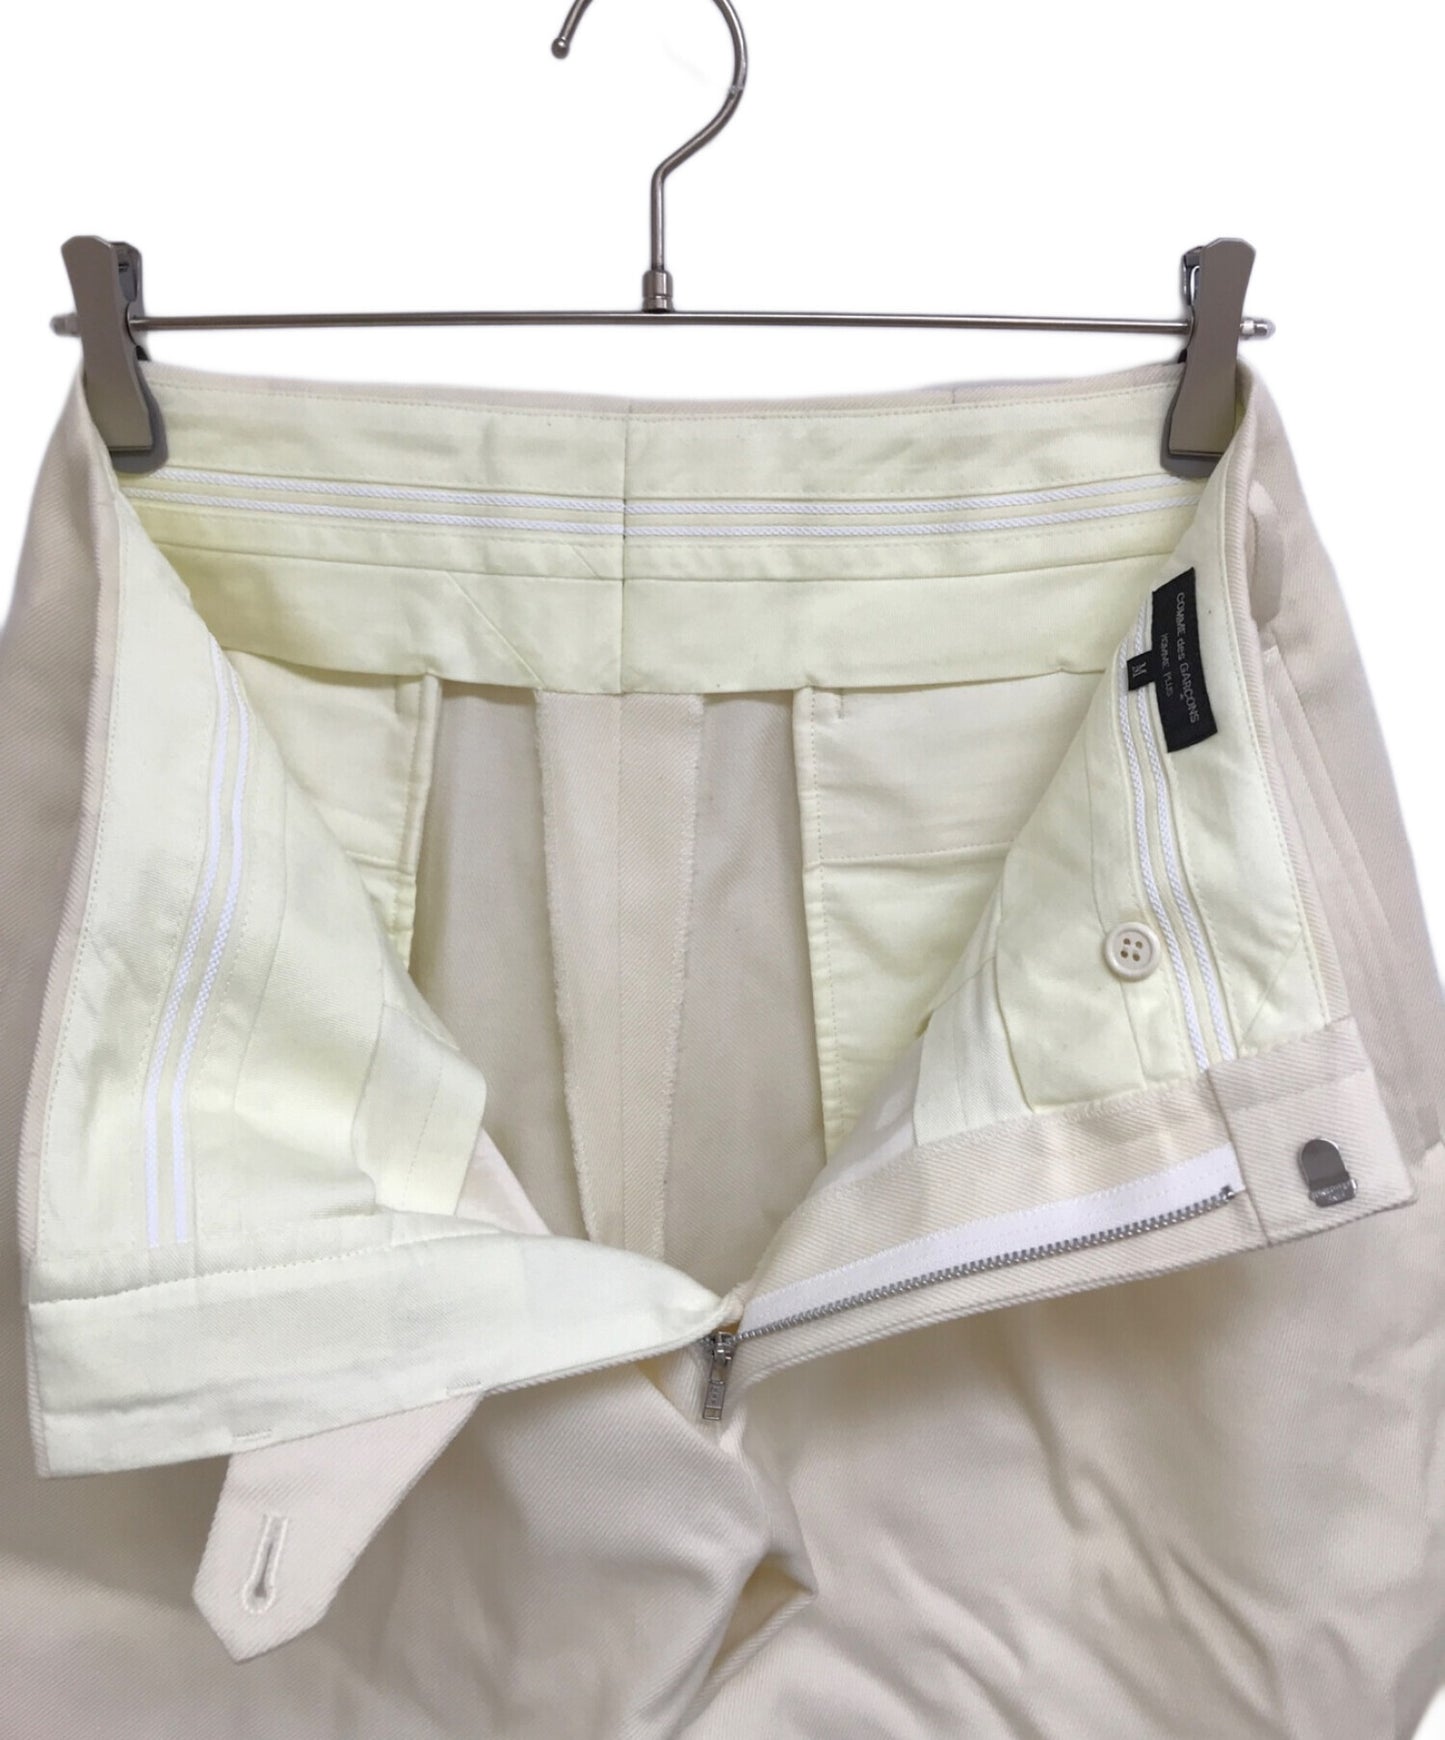 [Pre-owned] COMME des GARCONS HOMME PLUS 2-tuck wide pants PH-P034